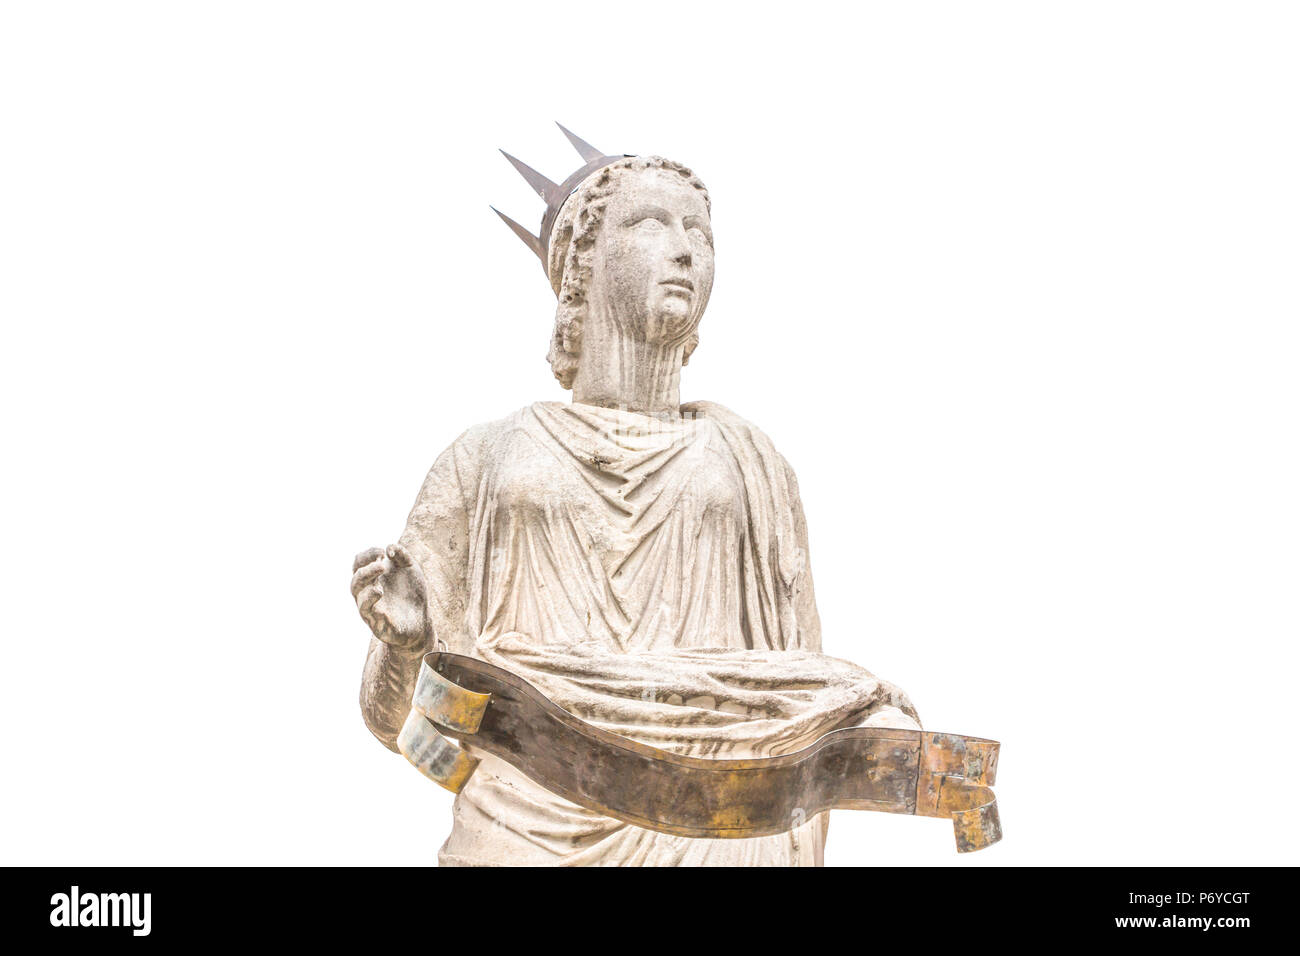 La Statue de Vérone Italie Ville / La Statue isolé sur fond blanc Banque D'Images